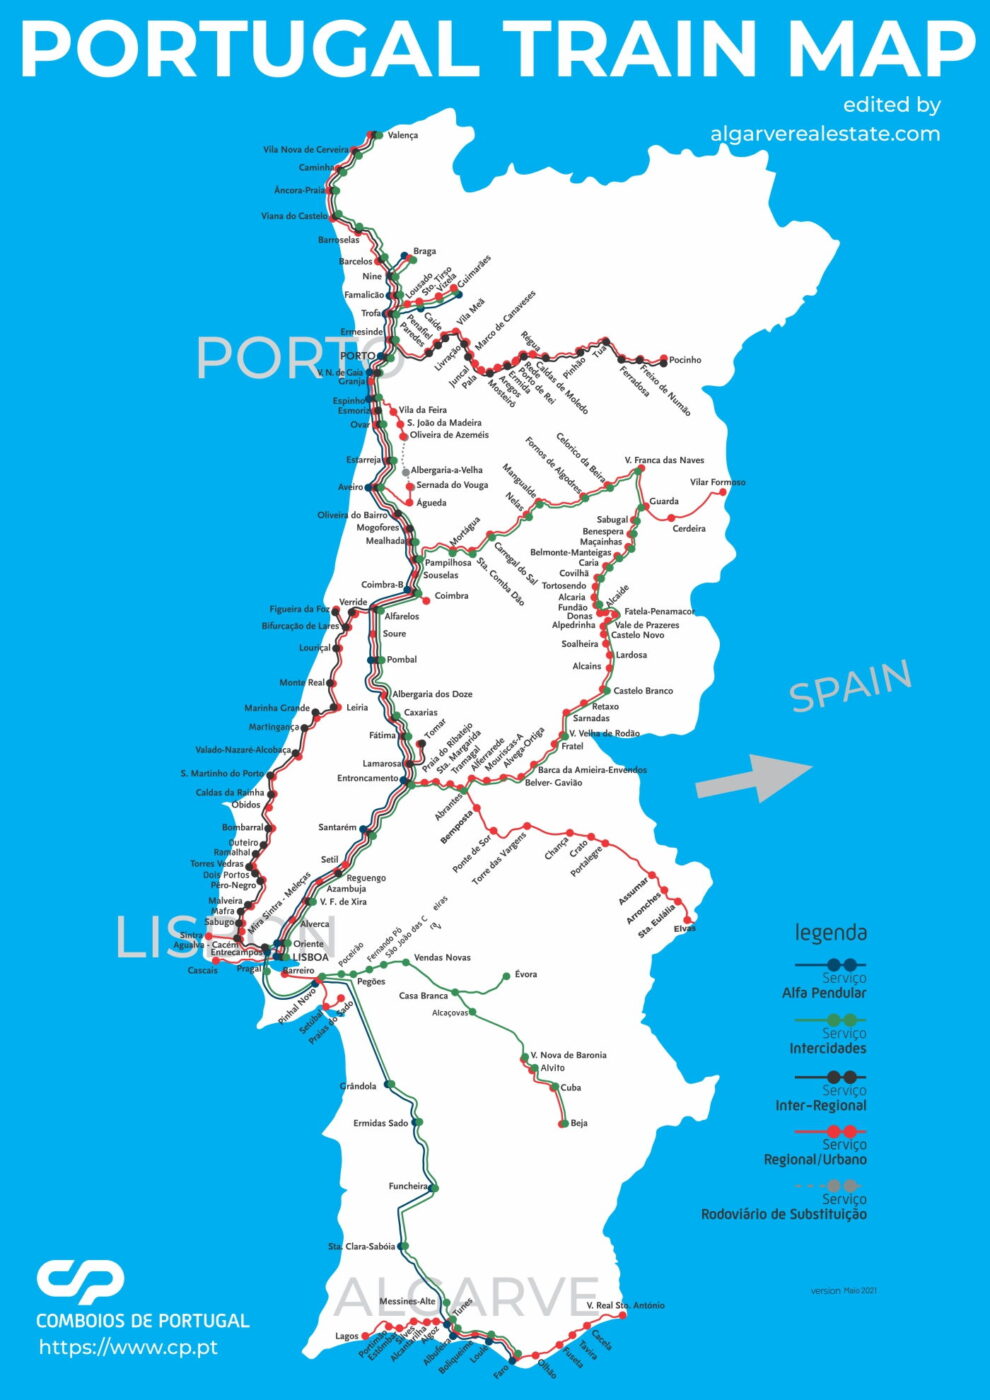 Carte du Portugal montrant les lignes de train, avec différentes couleurs représentant les différents types de services ferroviaires, notamment les trains rapides, les trains régionaux et les trains interurbains.